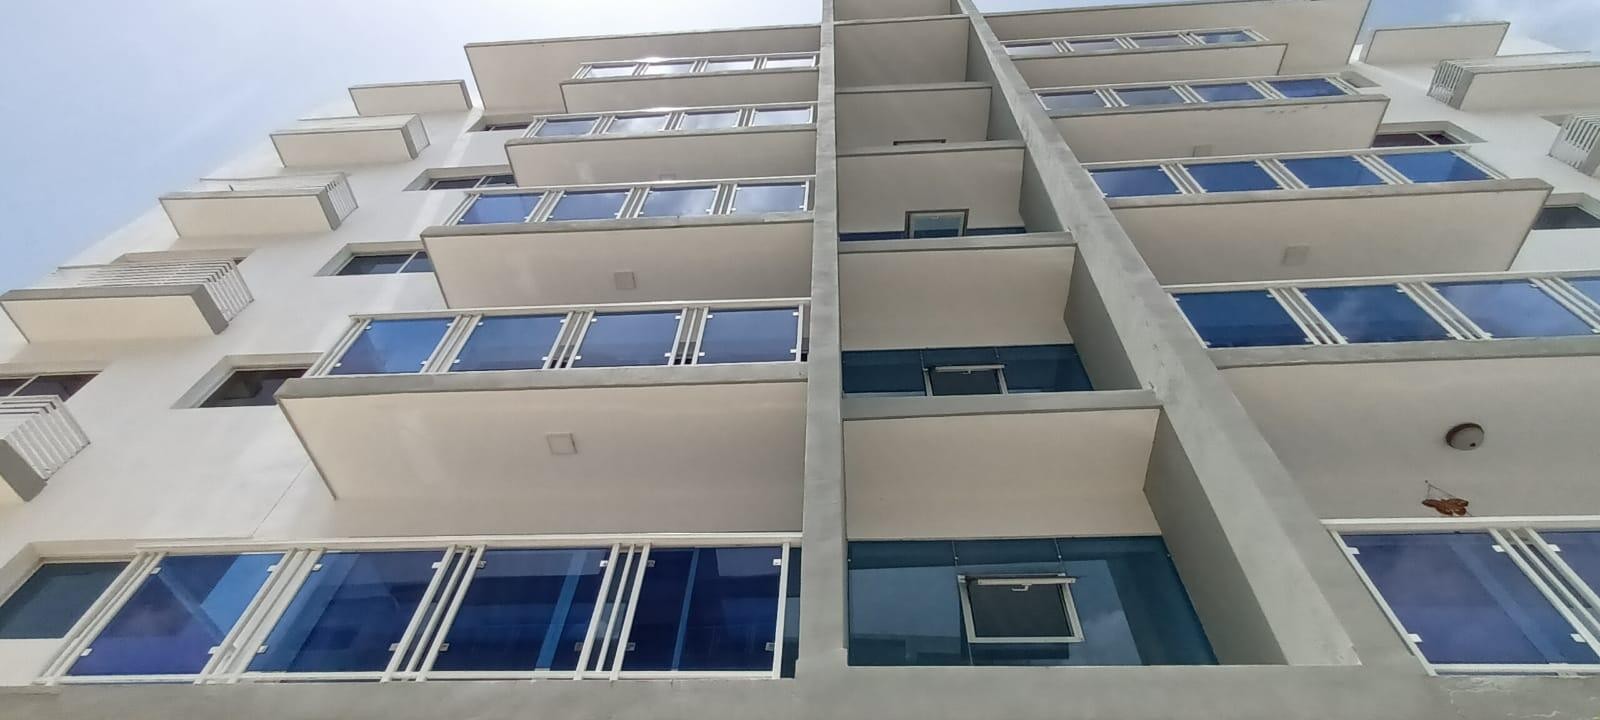 apartamentos - Se alquila céntrico, seguro e iluminado apartamento en la mejor zona de Santiago 0